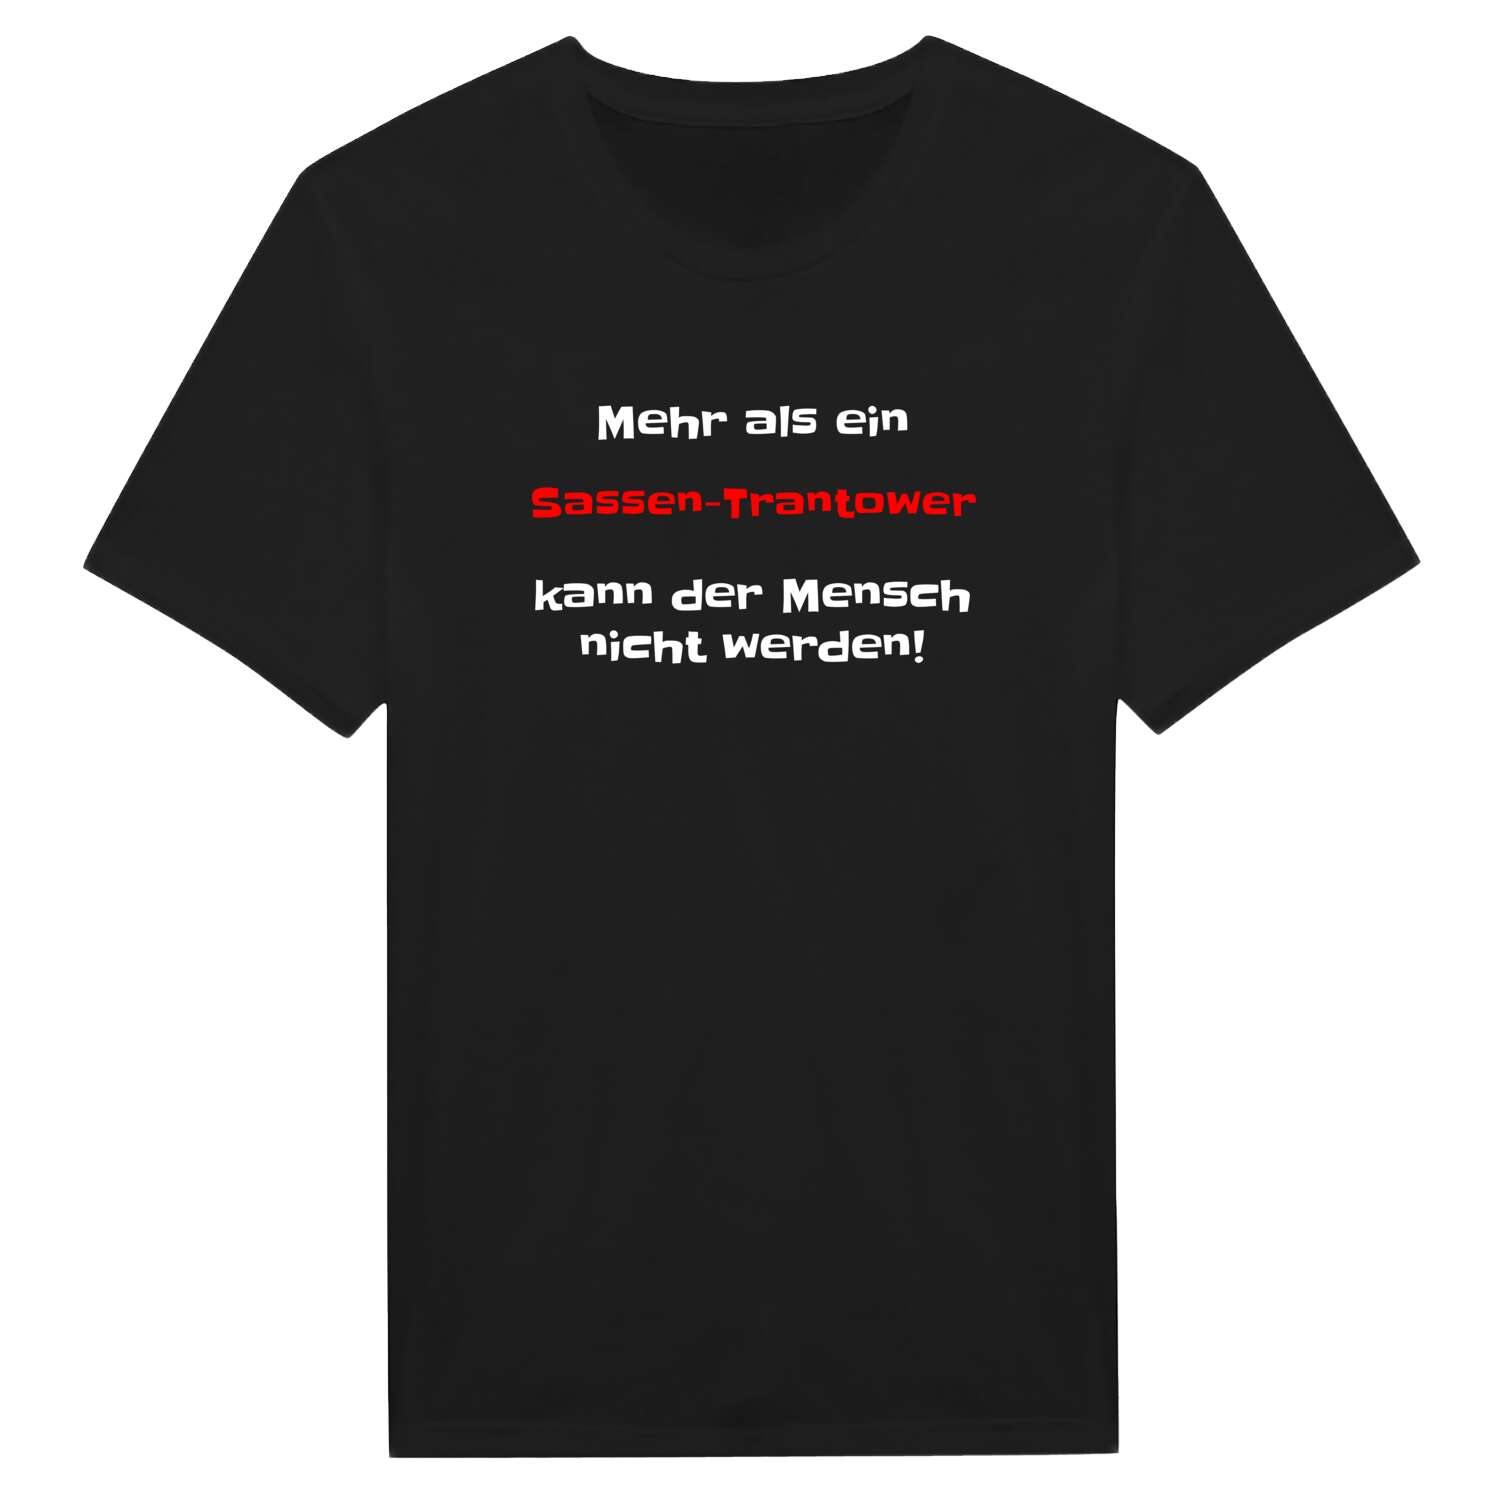 Sassen-Trantow T-Shirt »Mehr als ein«